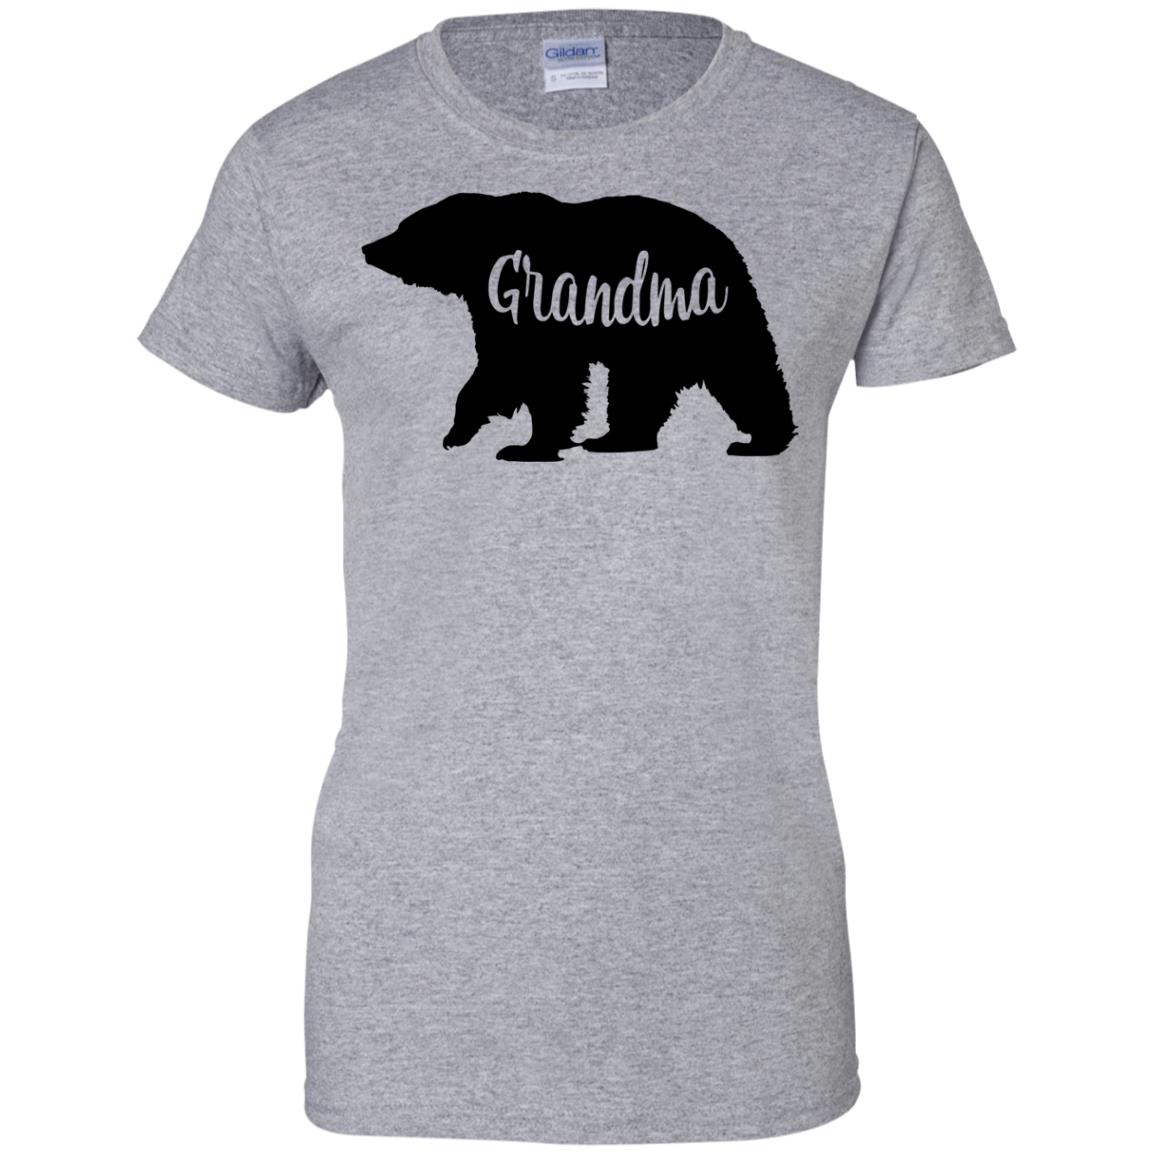 Grandma Bear Shirt - 10% Off - FavorMerch